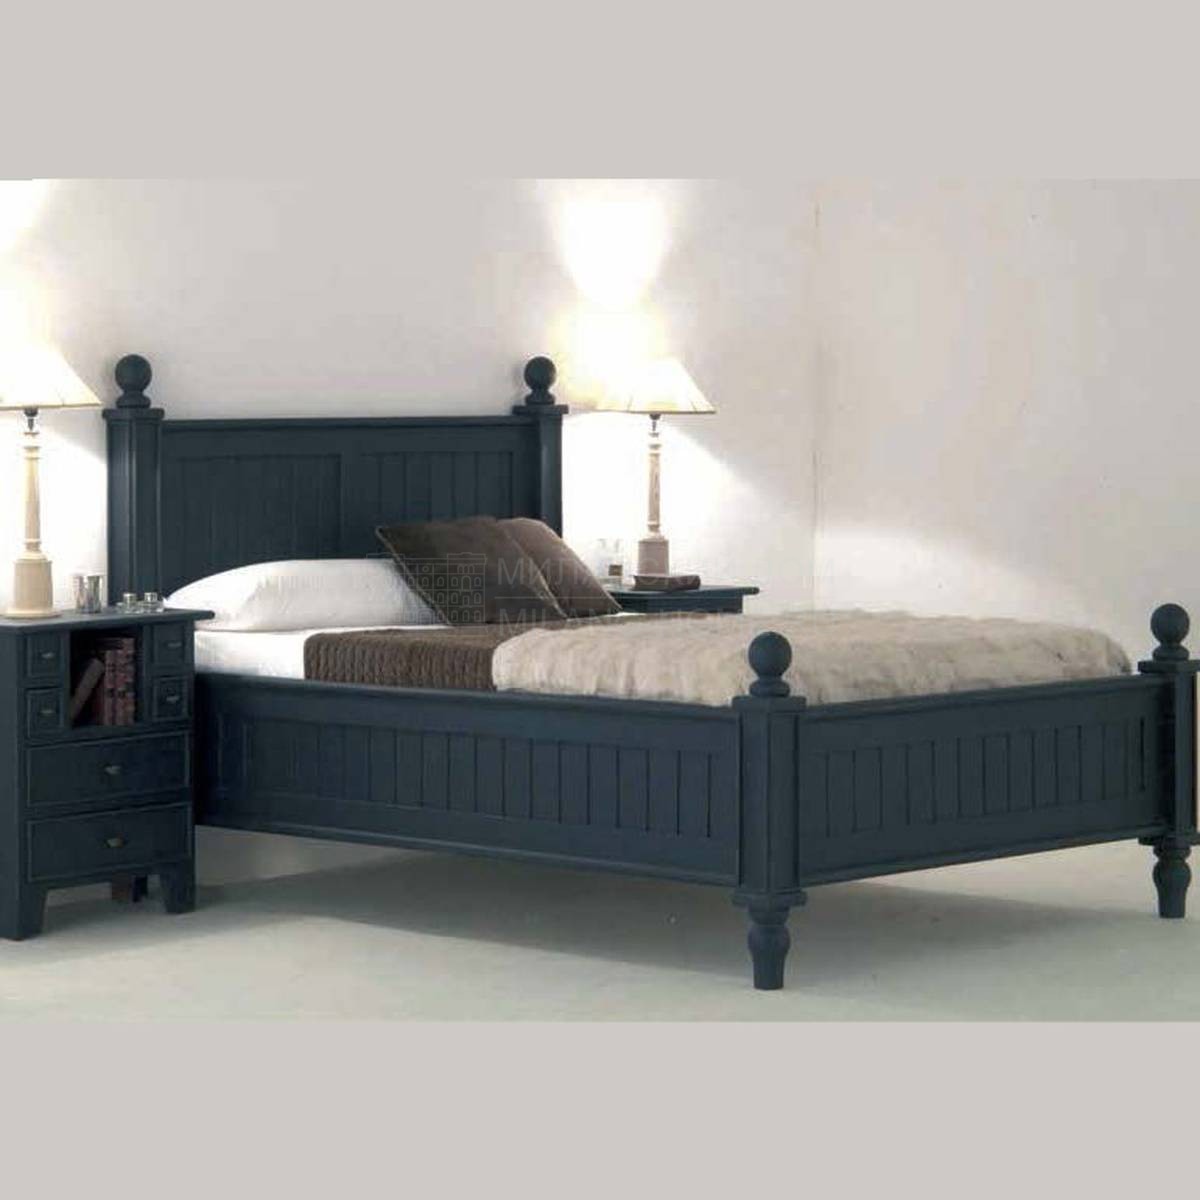 Кровать с деревянным изголовьем El Mueble Clasico art.DO-301 из Испании фабрики GUADARTE